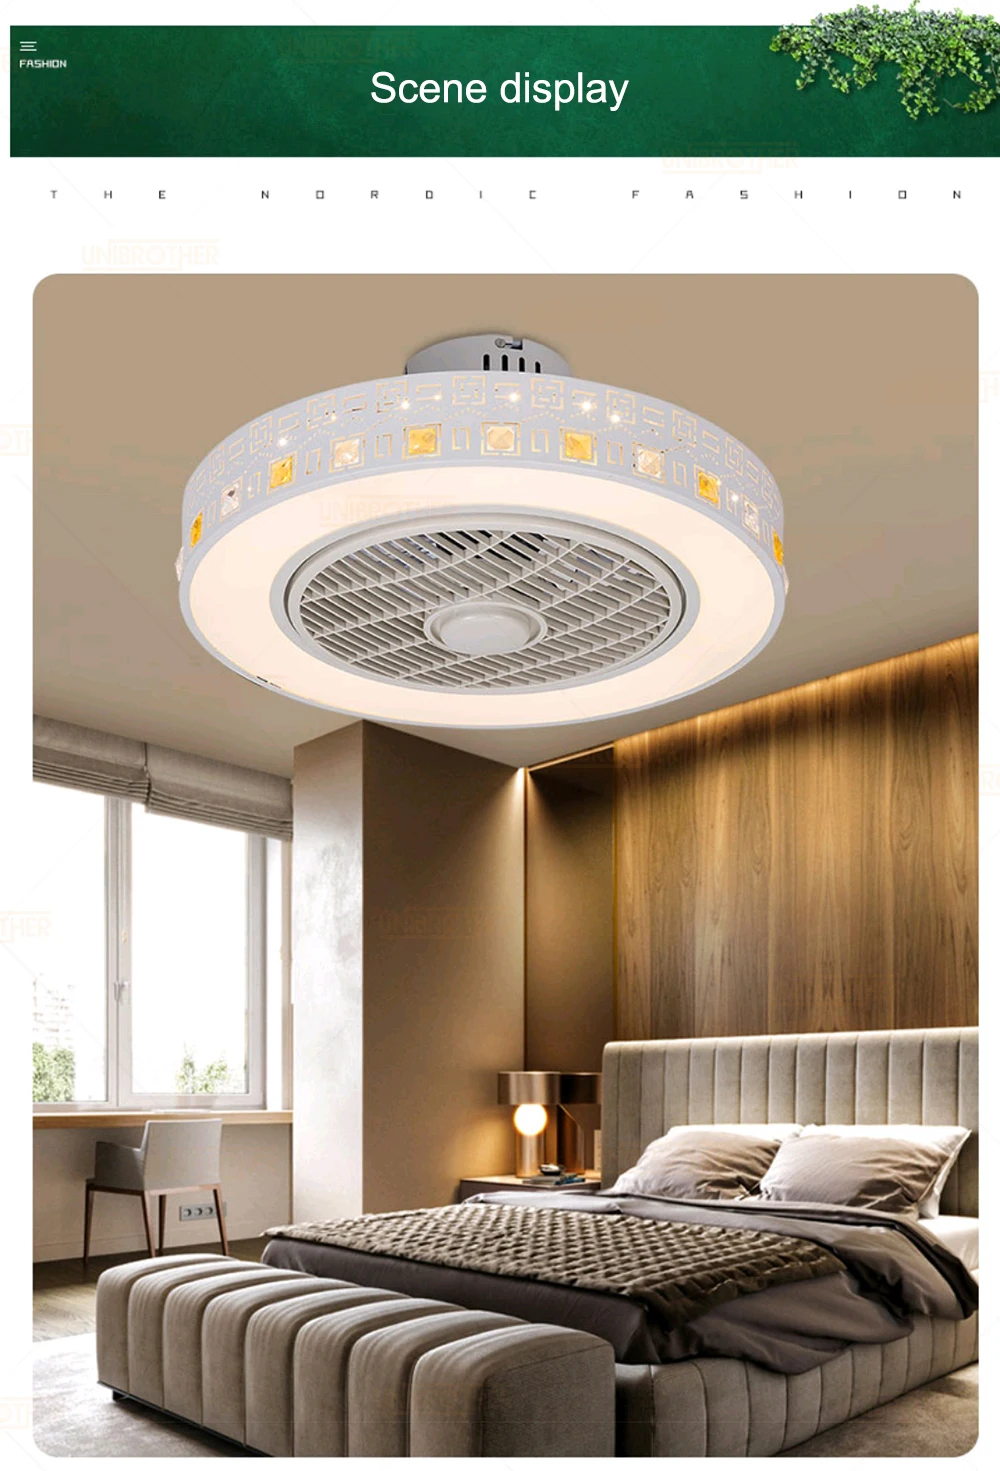 Потолочный вентилятор, светильник s, современный минималистичный светильник для ресторана, спальни, потолочный вентилятор, 220 В, пульт дистанционного управления, декоративная потолочная лампа